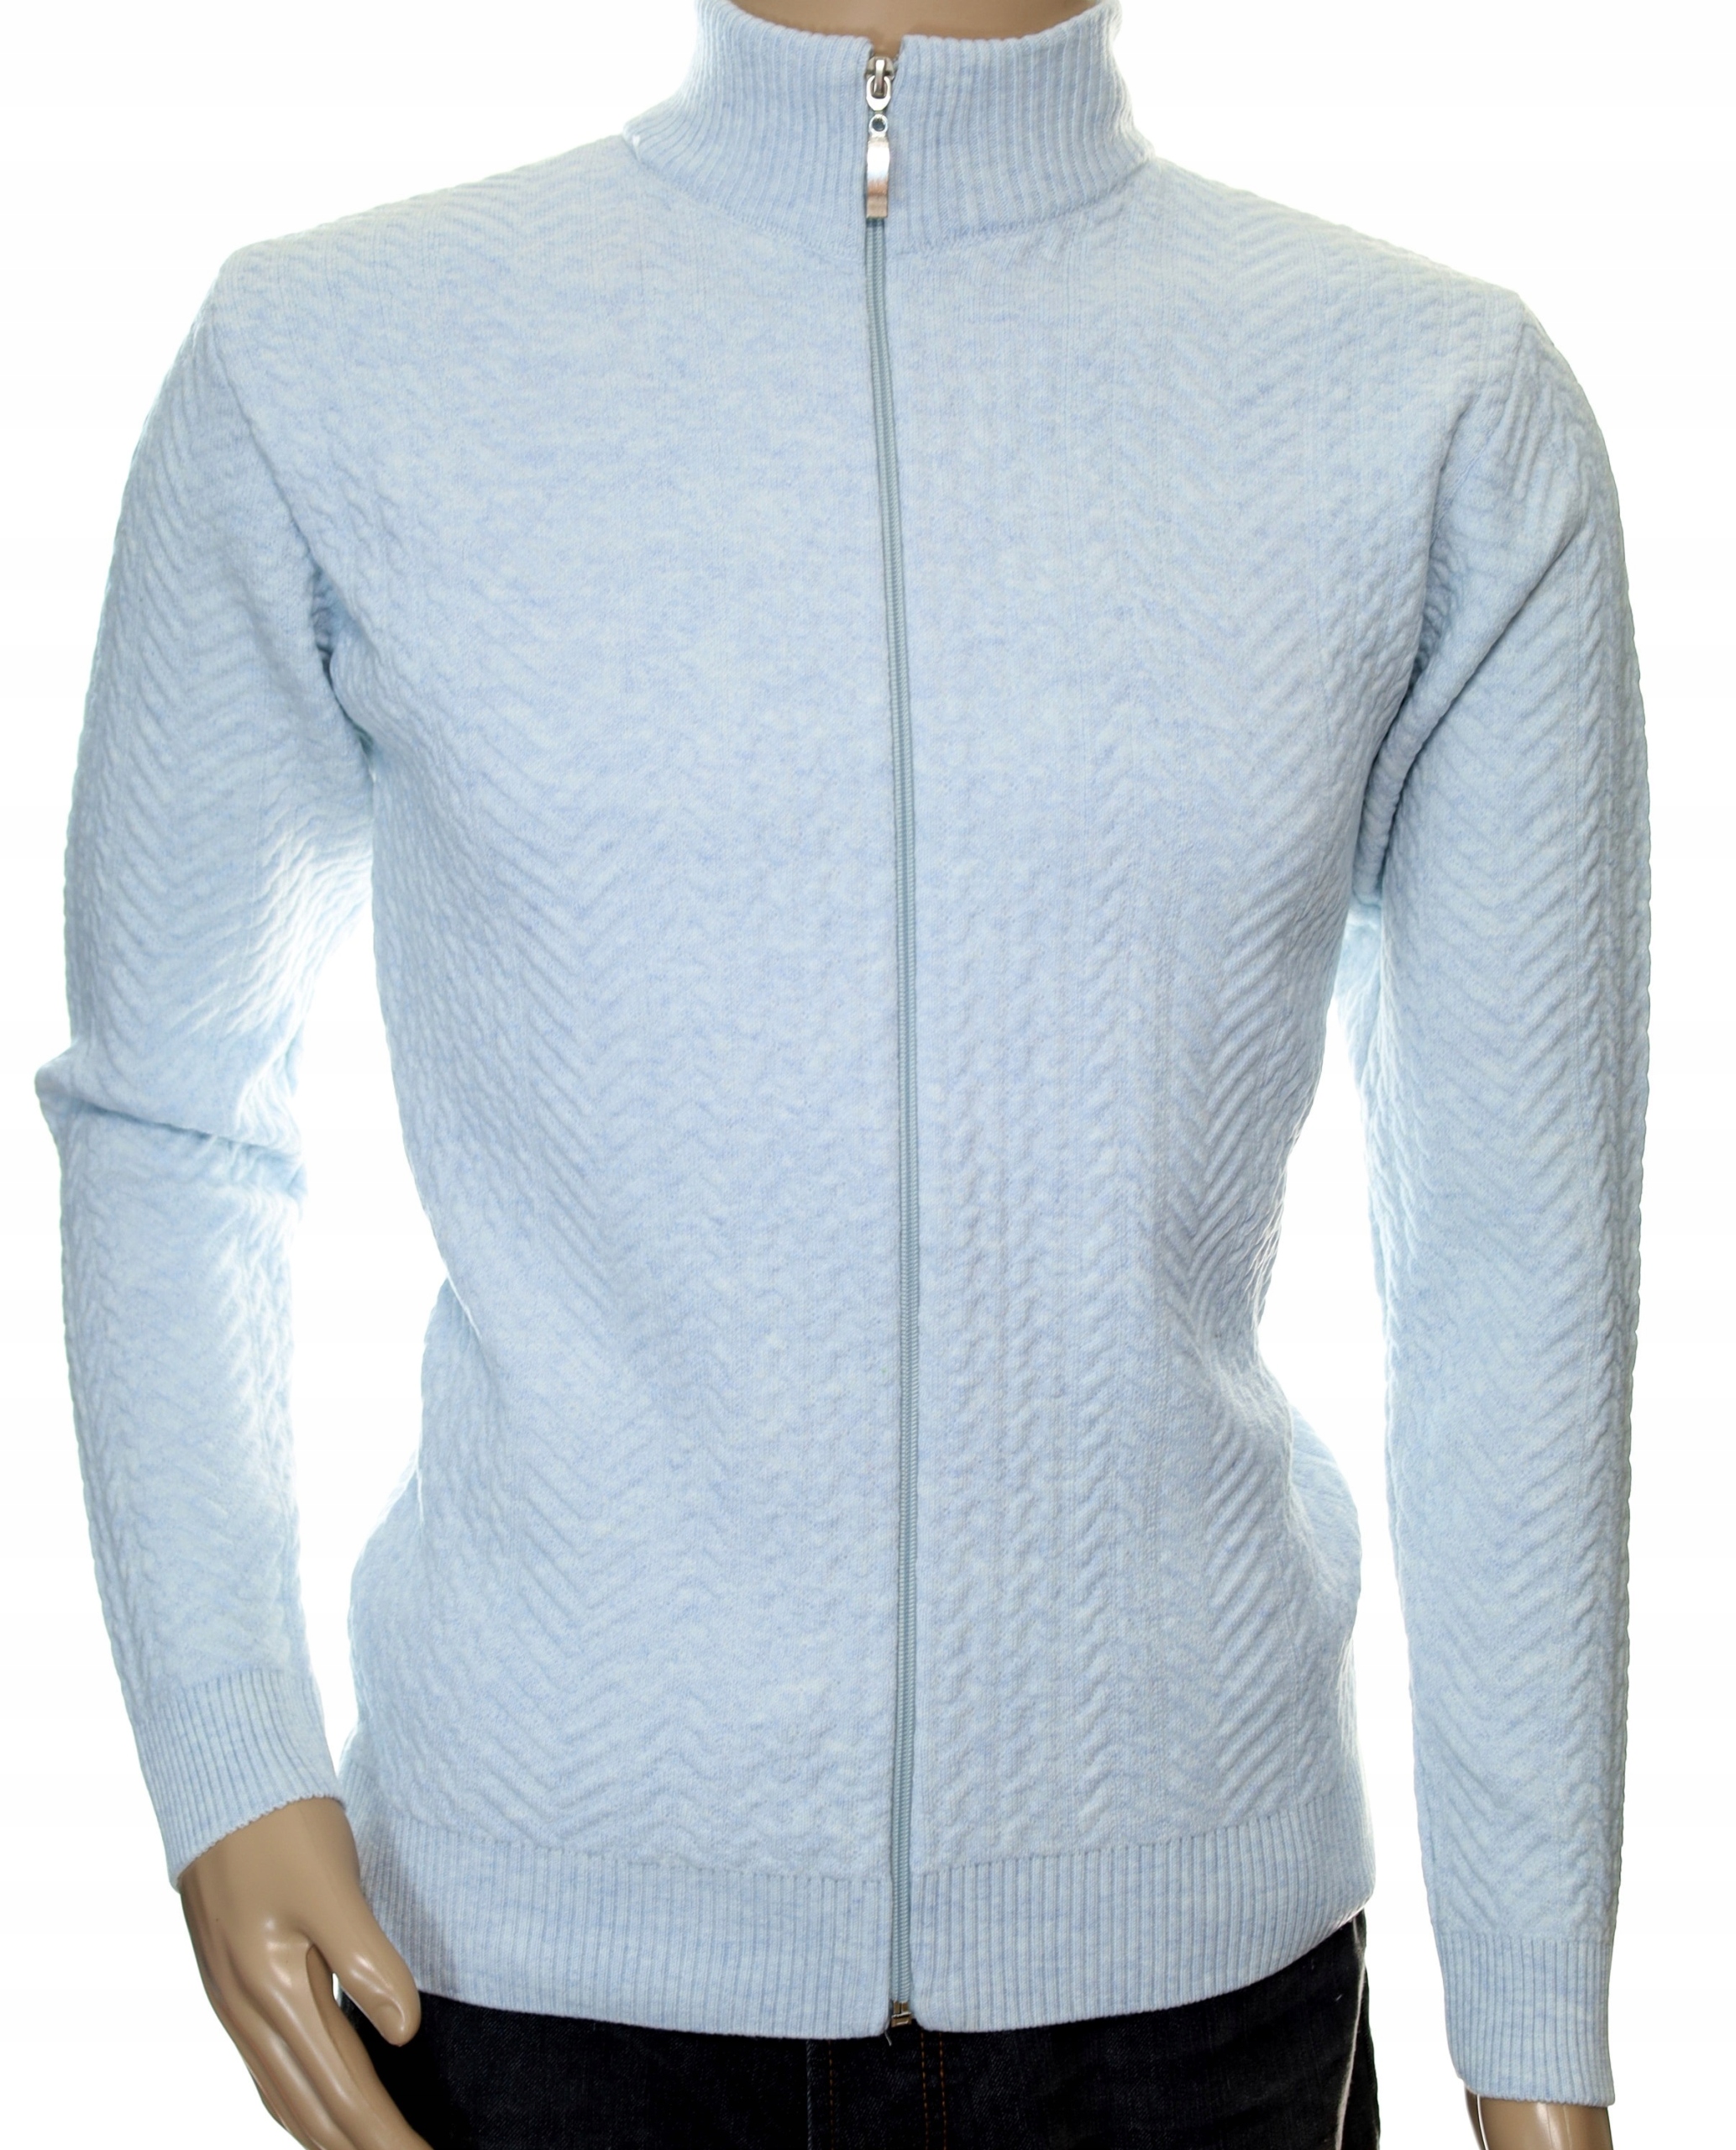 Hrejivý pánsky sveter z vlnenej vlny pekný rozopínateľný na zips L